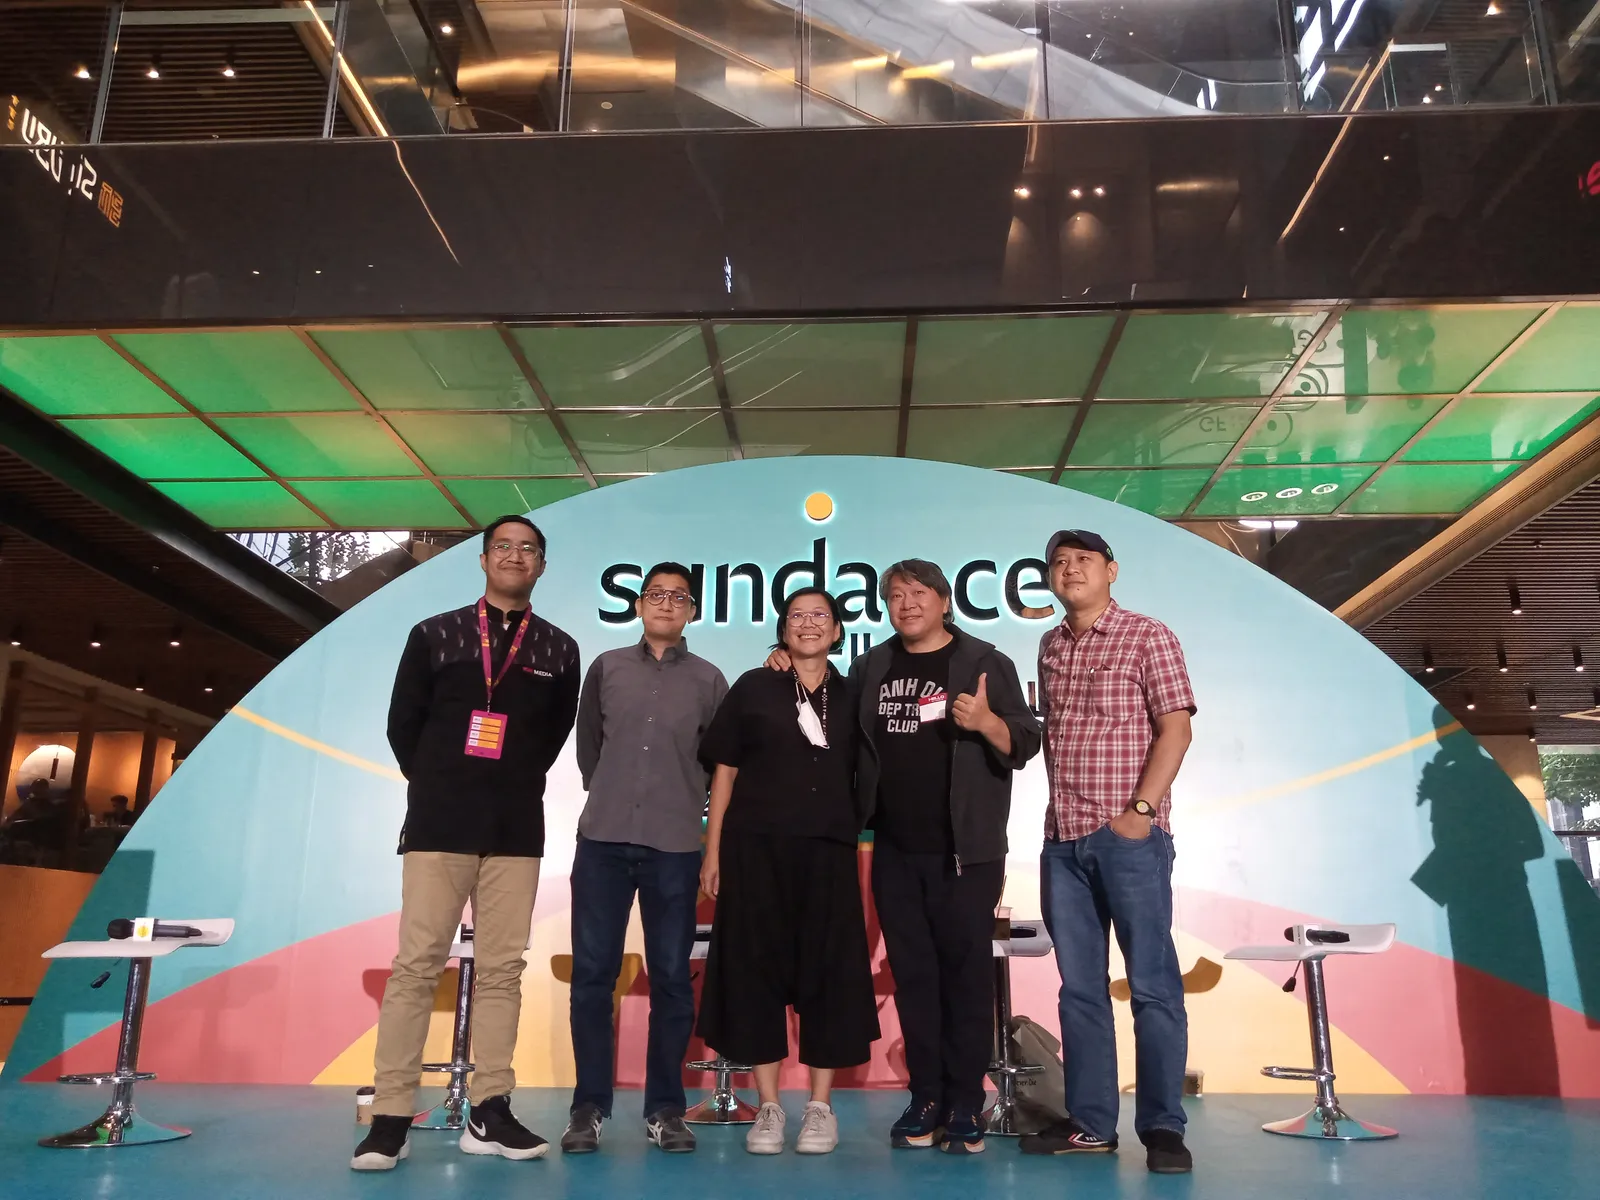 Sundance Film Festival: Asia 2022, Cara Membangun Konsep Film